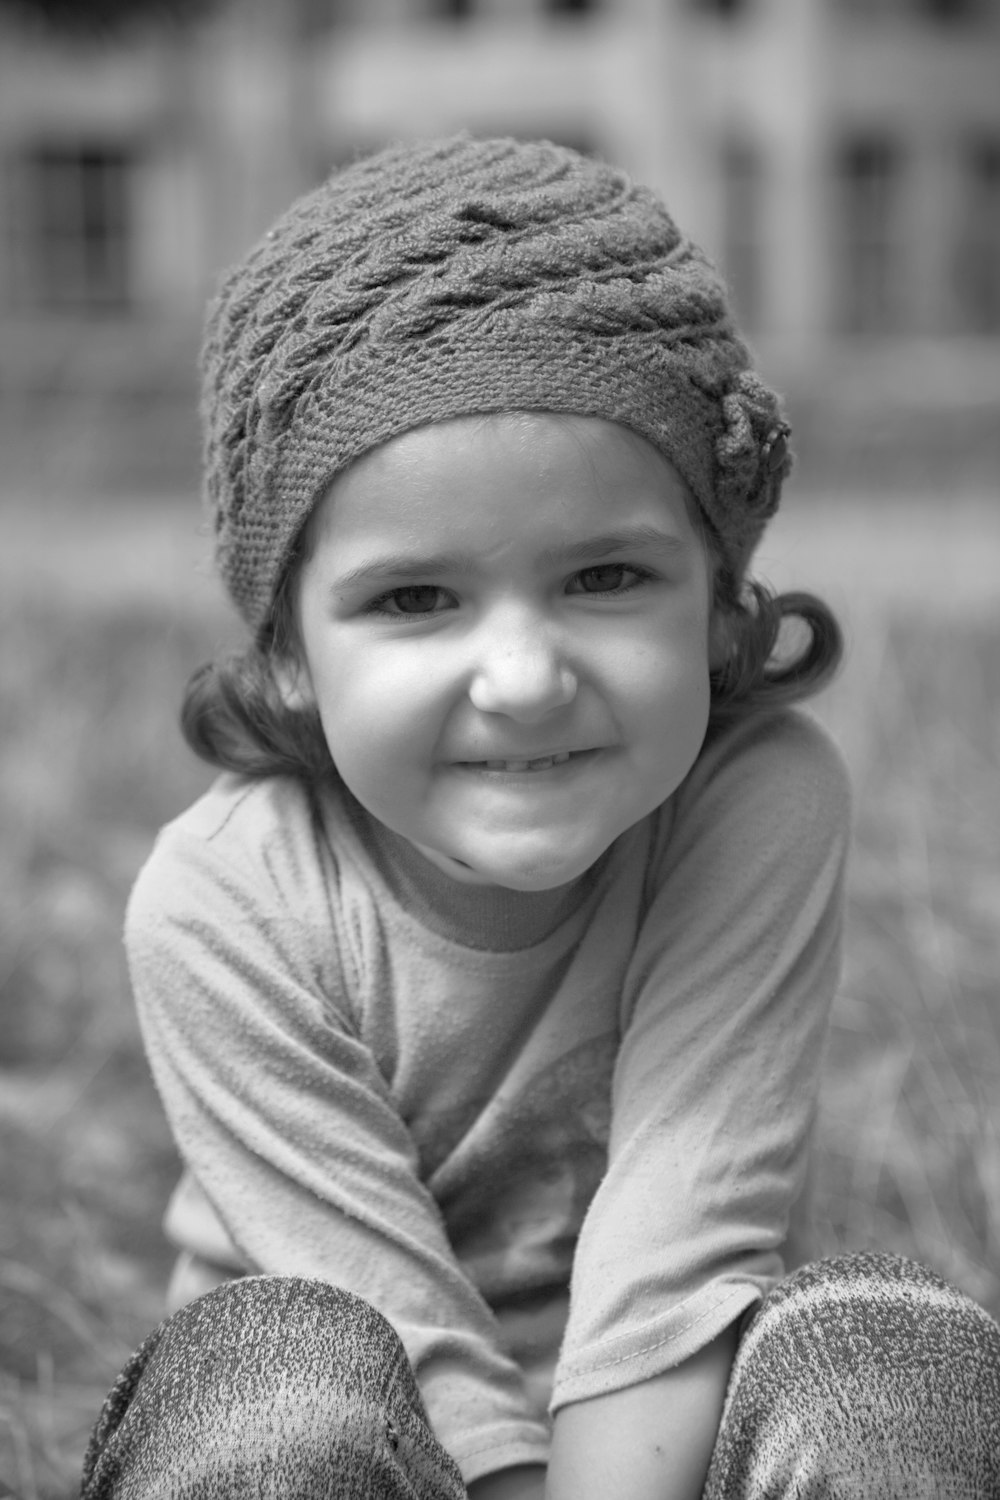 니트 모자와 크루넥 긴팔 셔츠를 입고 웃고 있는 소녀의 그레이스케일 사진